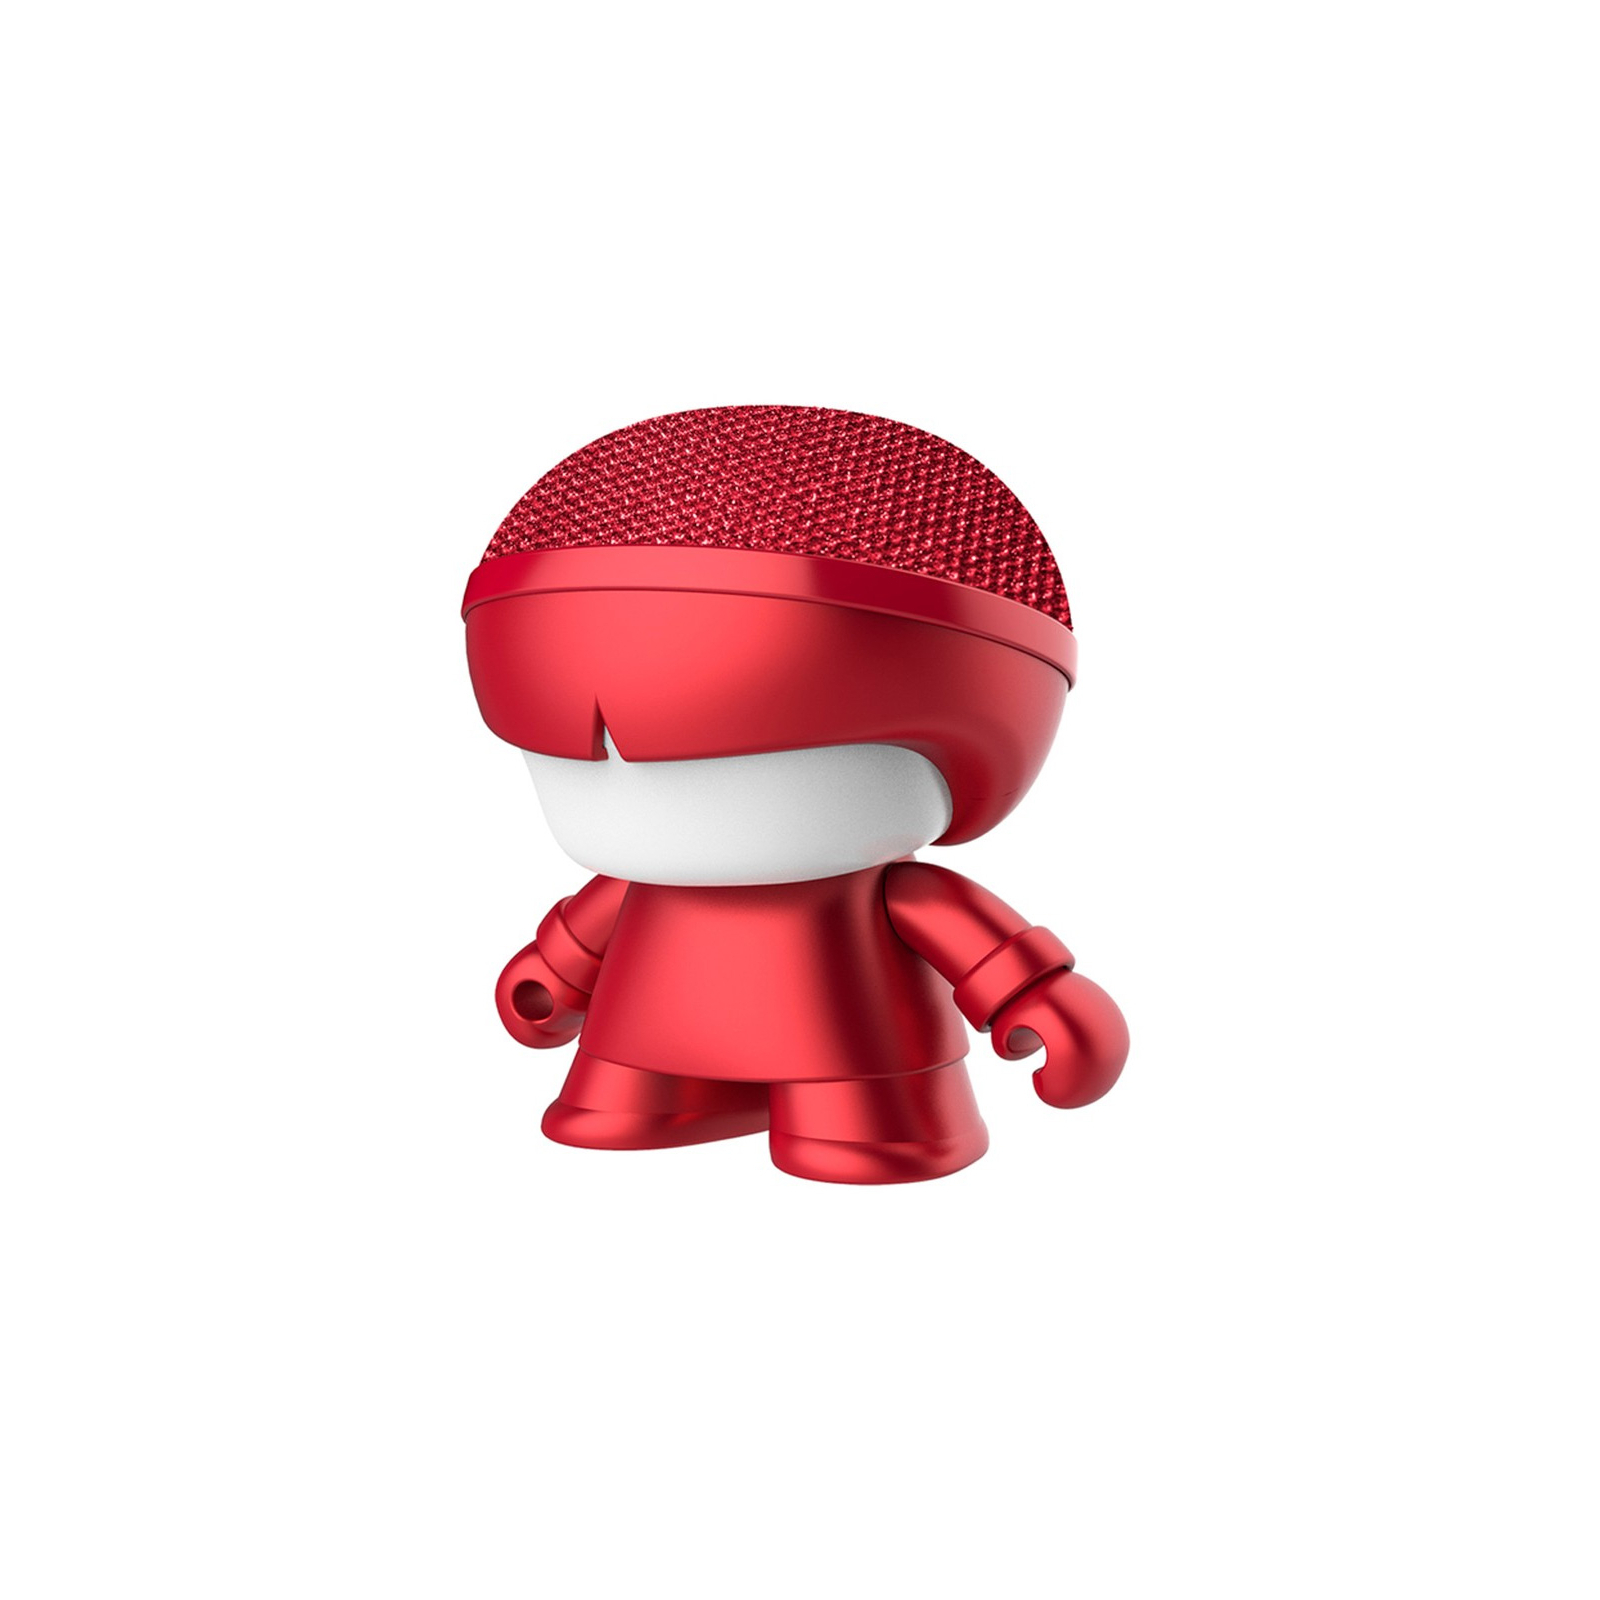 Интерактивная игрушка Xoopar Акустическая система Mini Xboy Металлик Red (XBOY81001.15М)